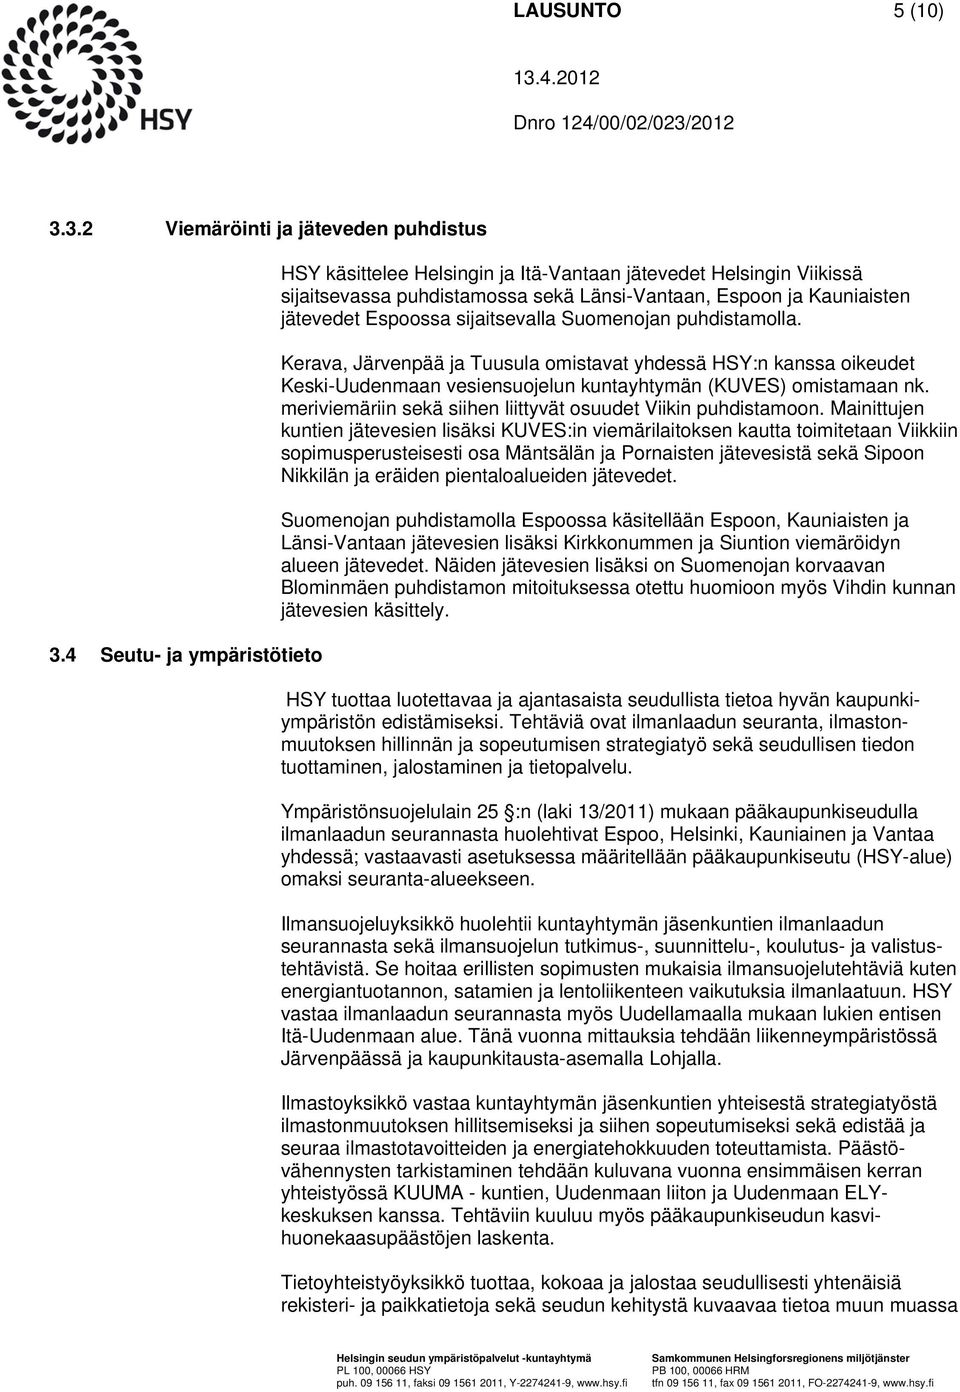 Suomenojan puhdistamolla. Kerava, Järvenpää ja Tuusula omistavat yhdessä HSY:n kanssa oikeudet Keski-Uudenmaan vesiensuojelun kuntayhtymän (KUVES) omistamaan nk.